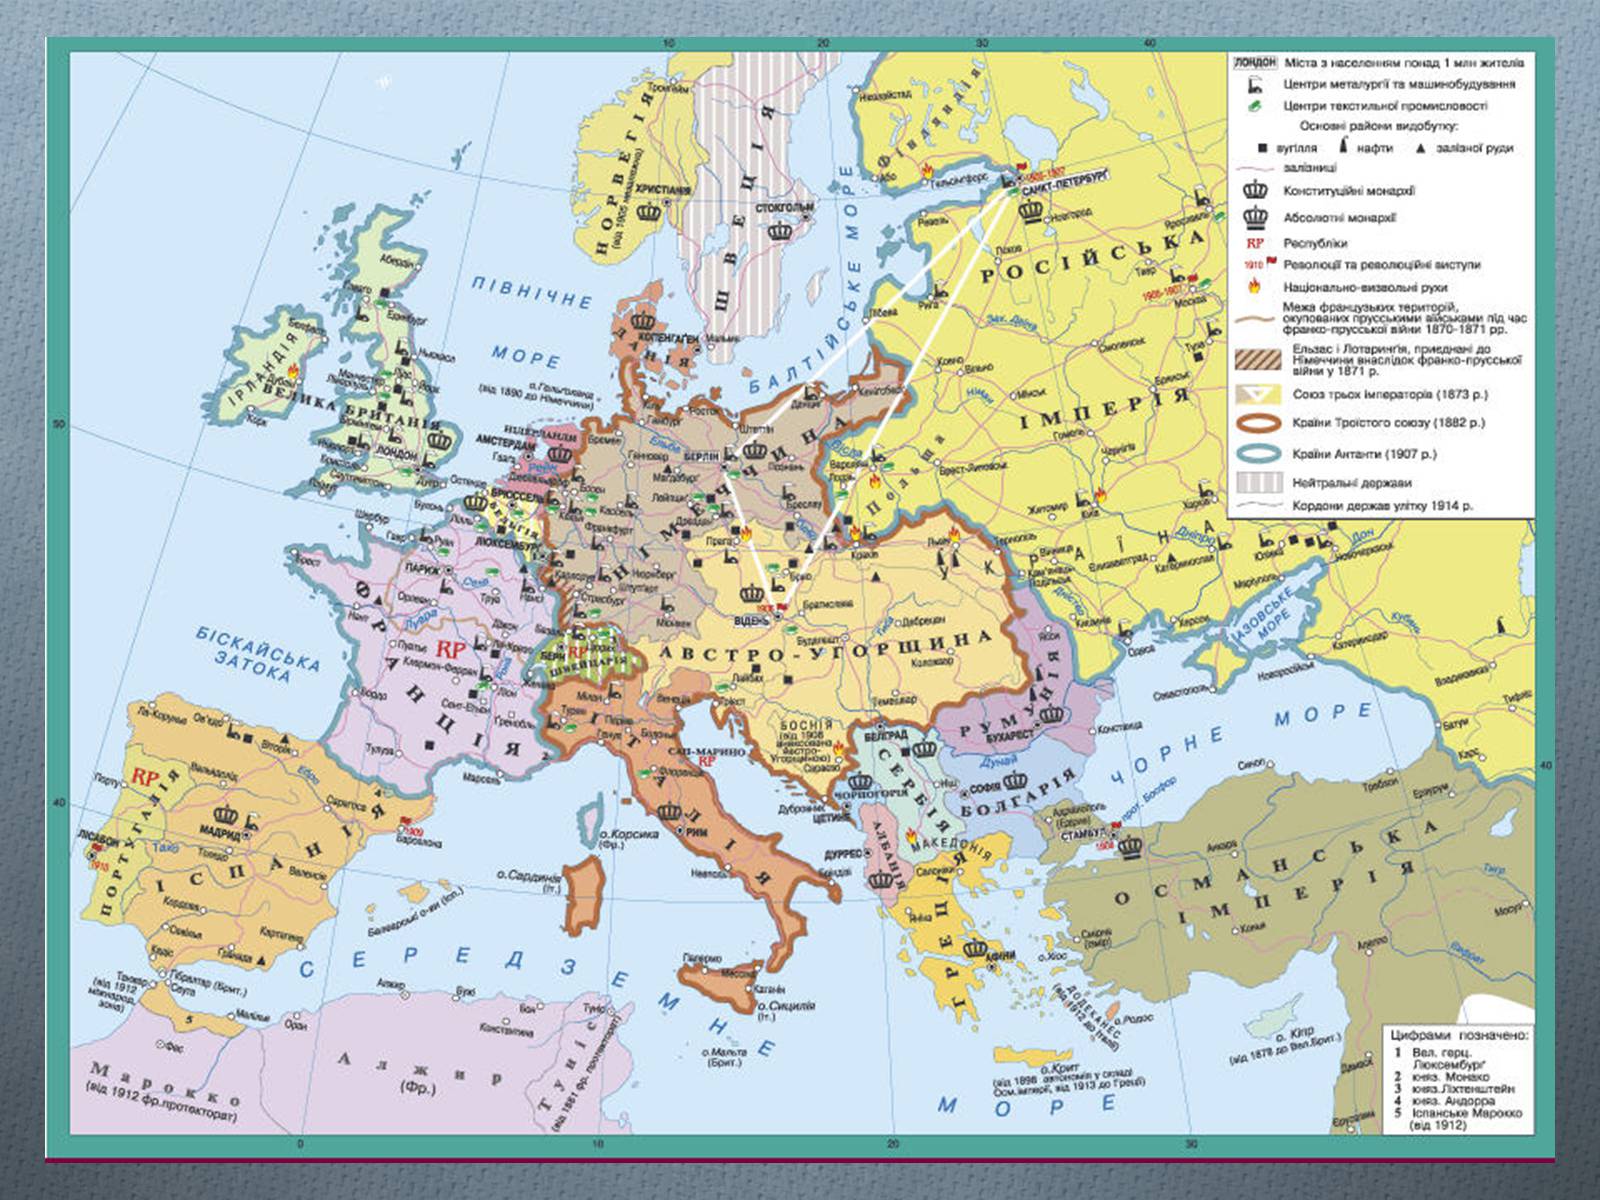 Страны 20 века. Карта Европы середины 19 века. Карта Европы начала 20 века. Карта Европы начала 20 века со странами крупно на русском. Политическая карта Европы начала 20 века.